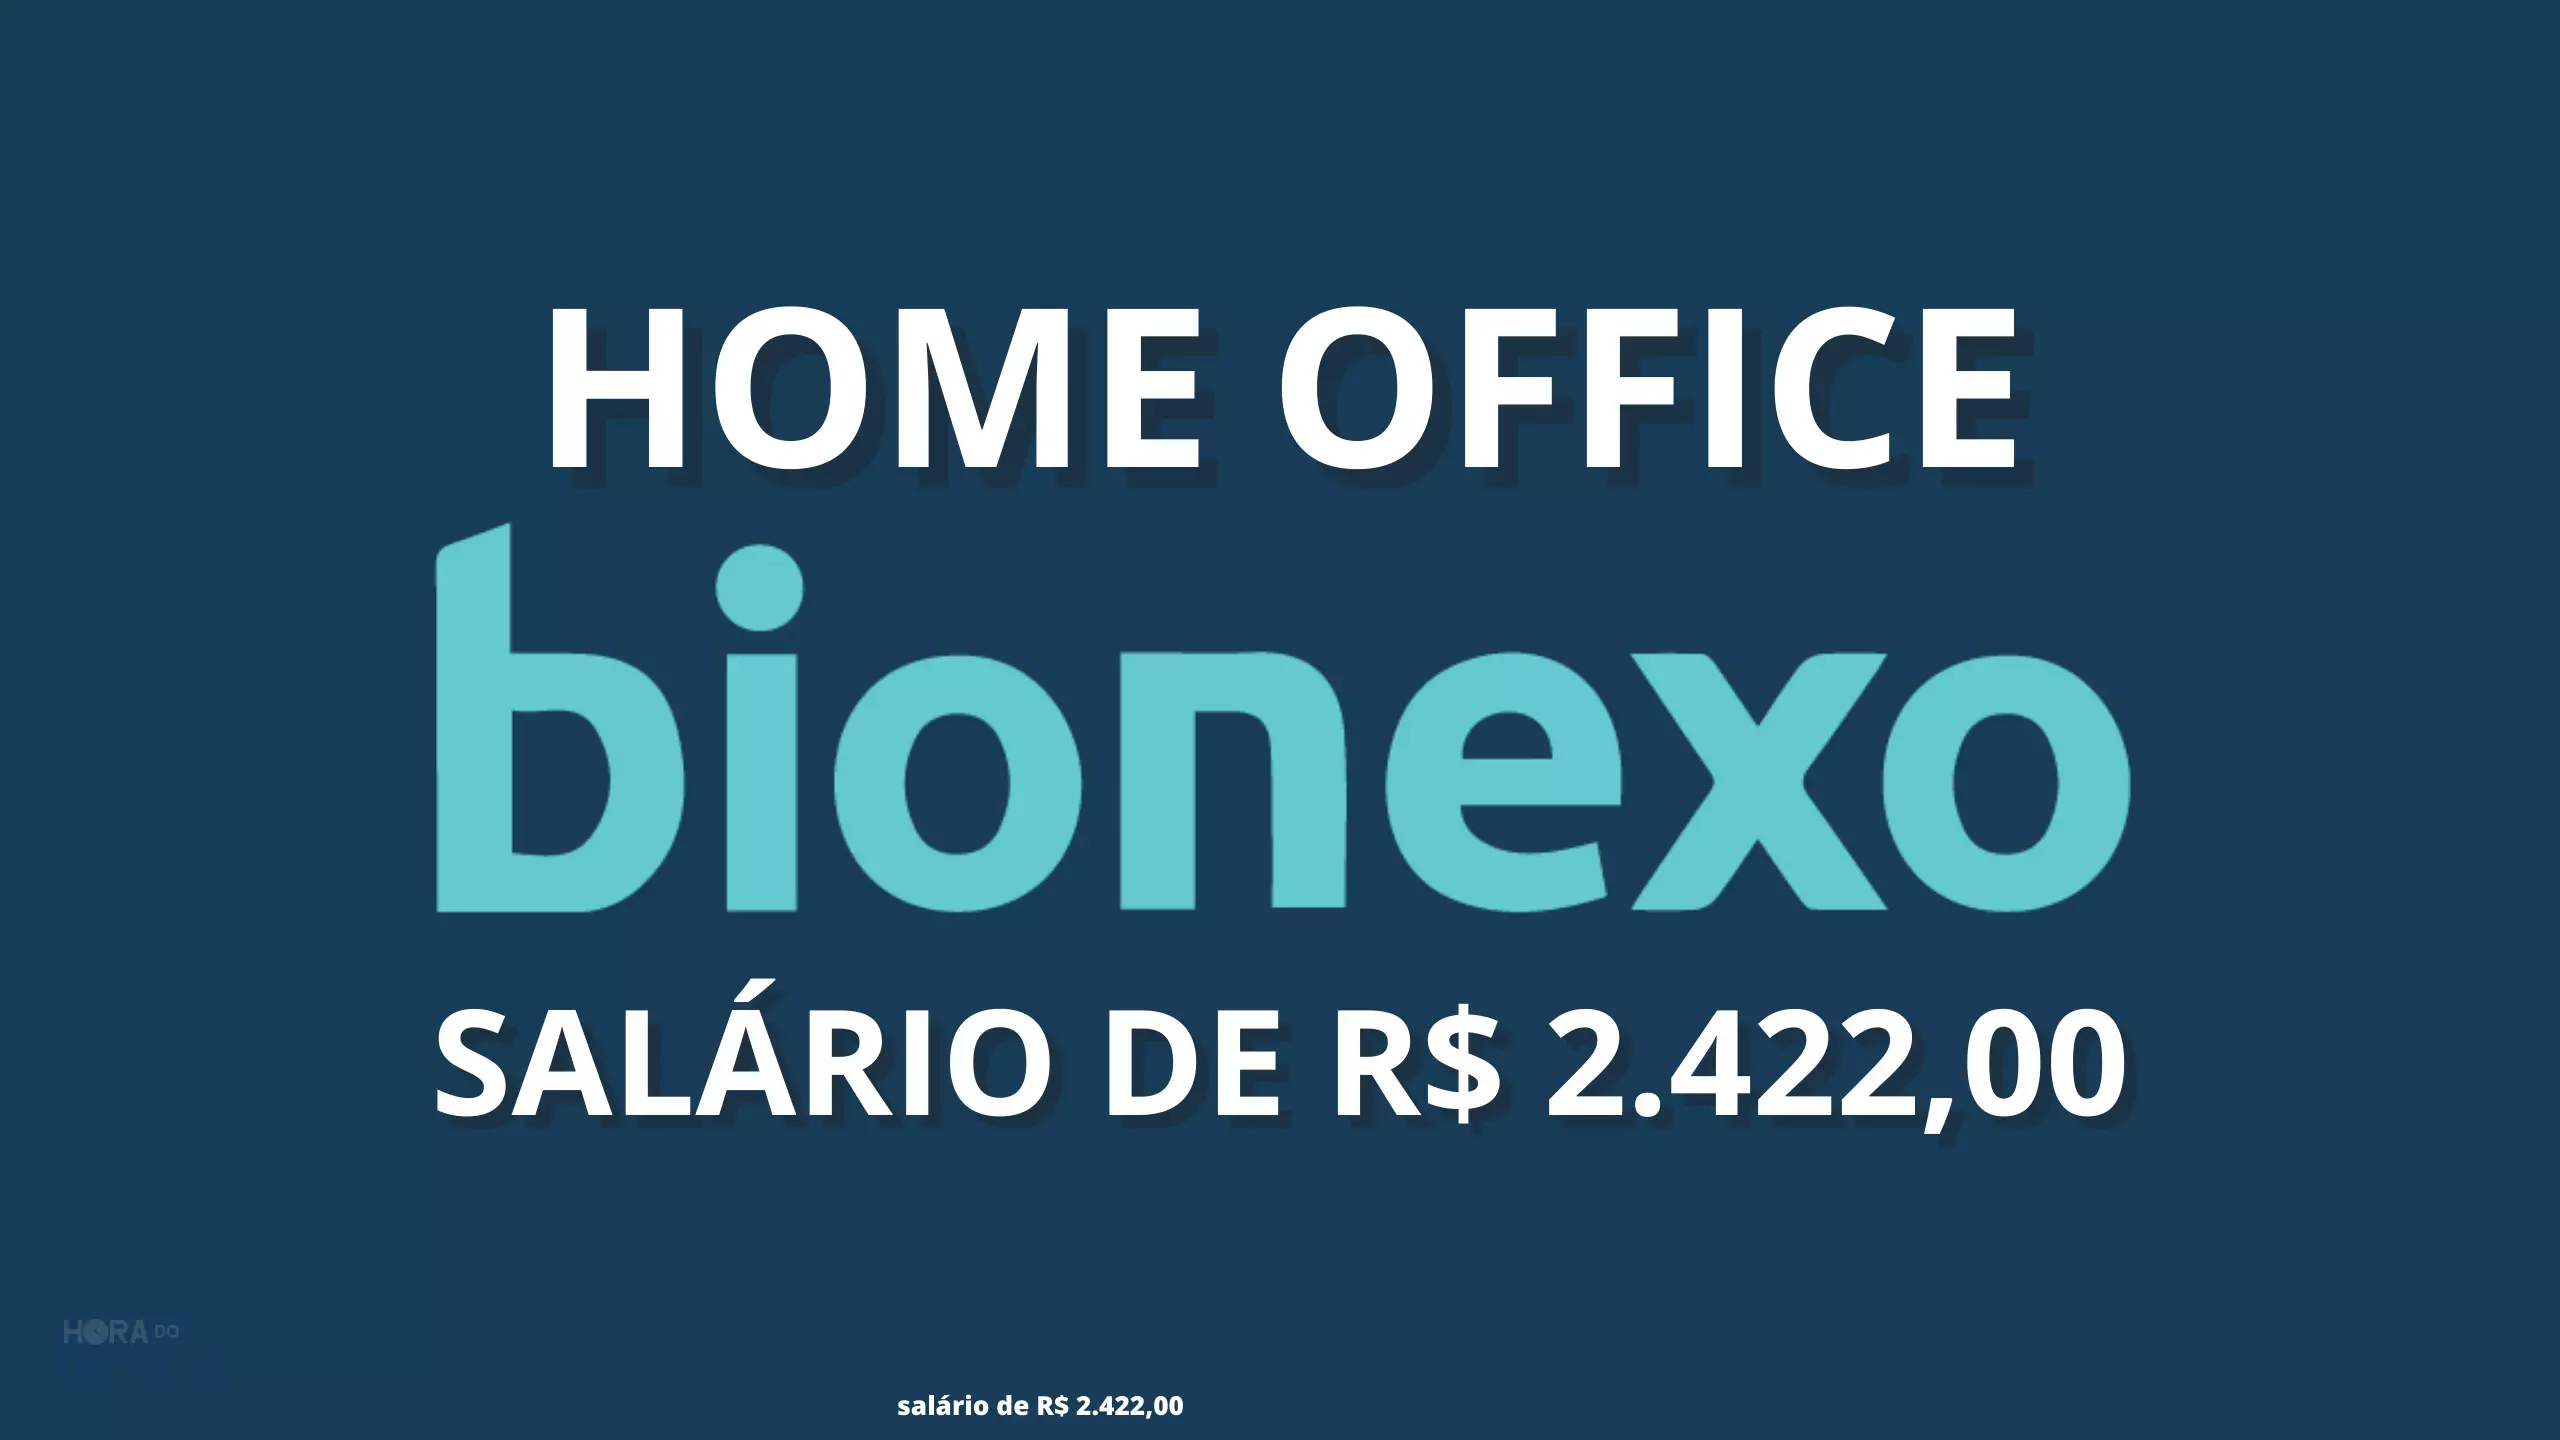 Bionexo abre vaga 100% HOME OFFICE para Atendimento ao Cliente com salário de R$ 2.422,00